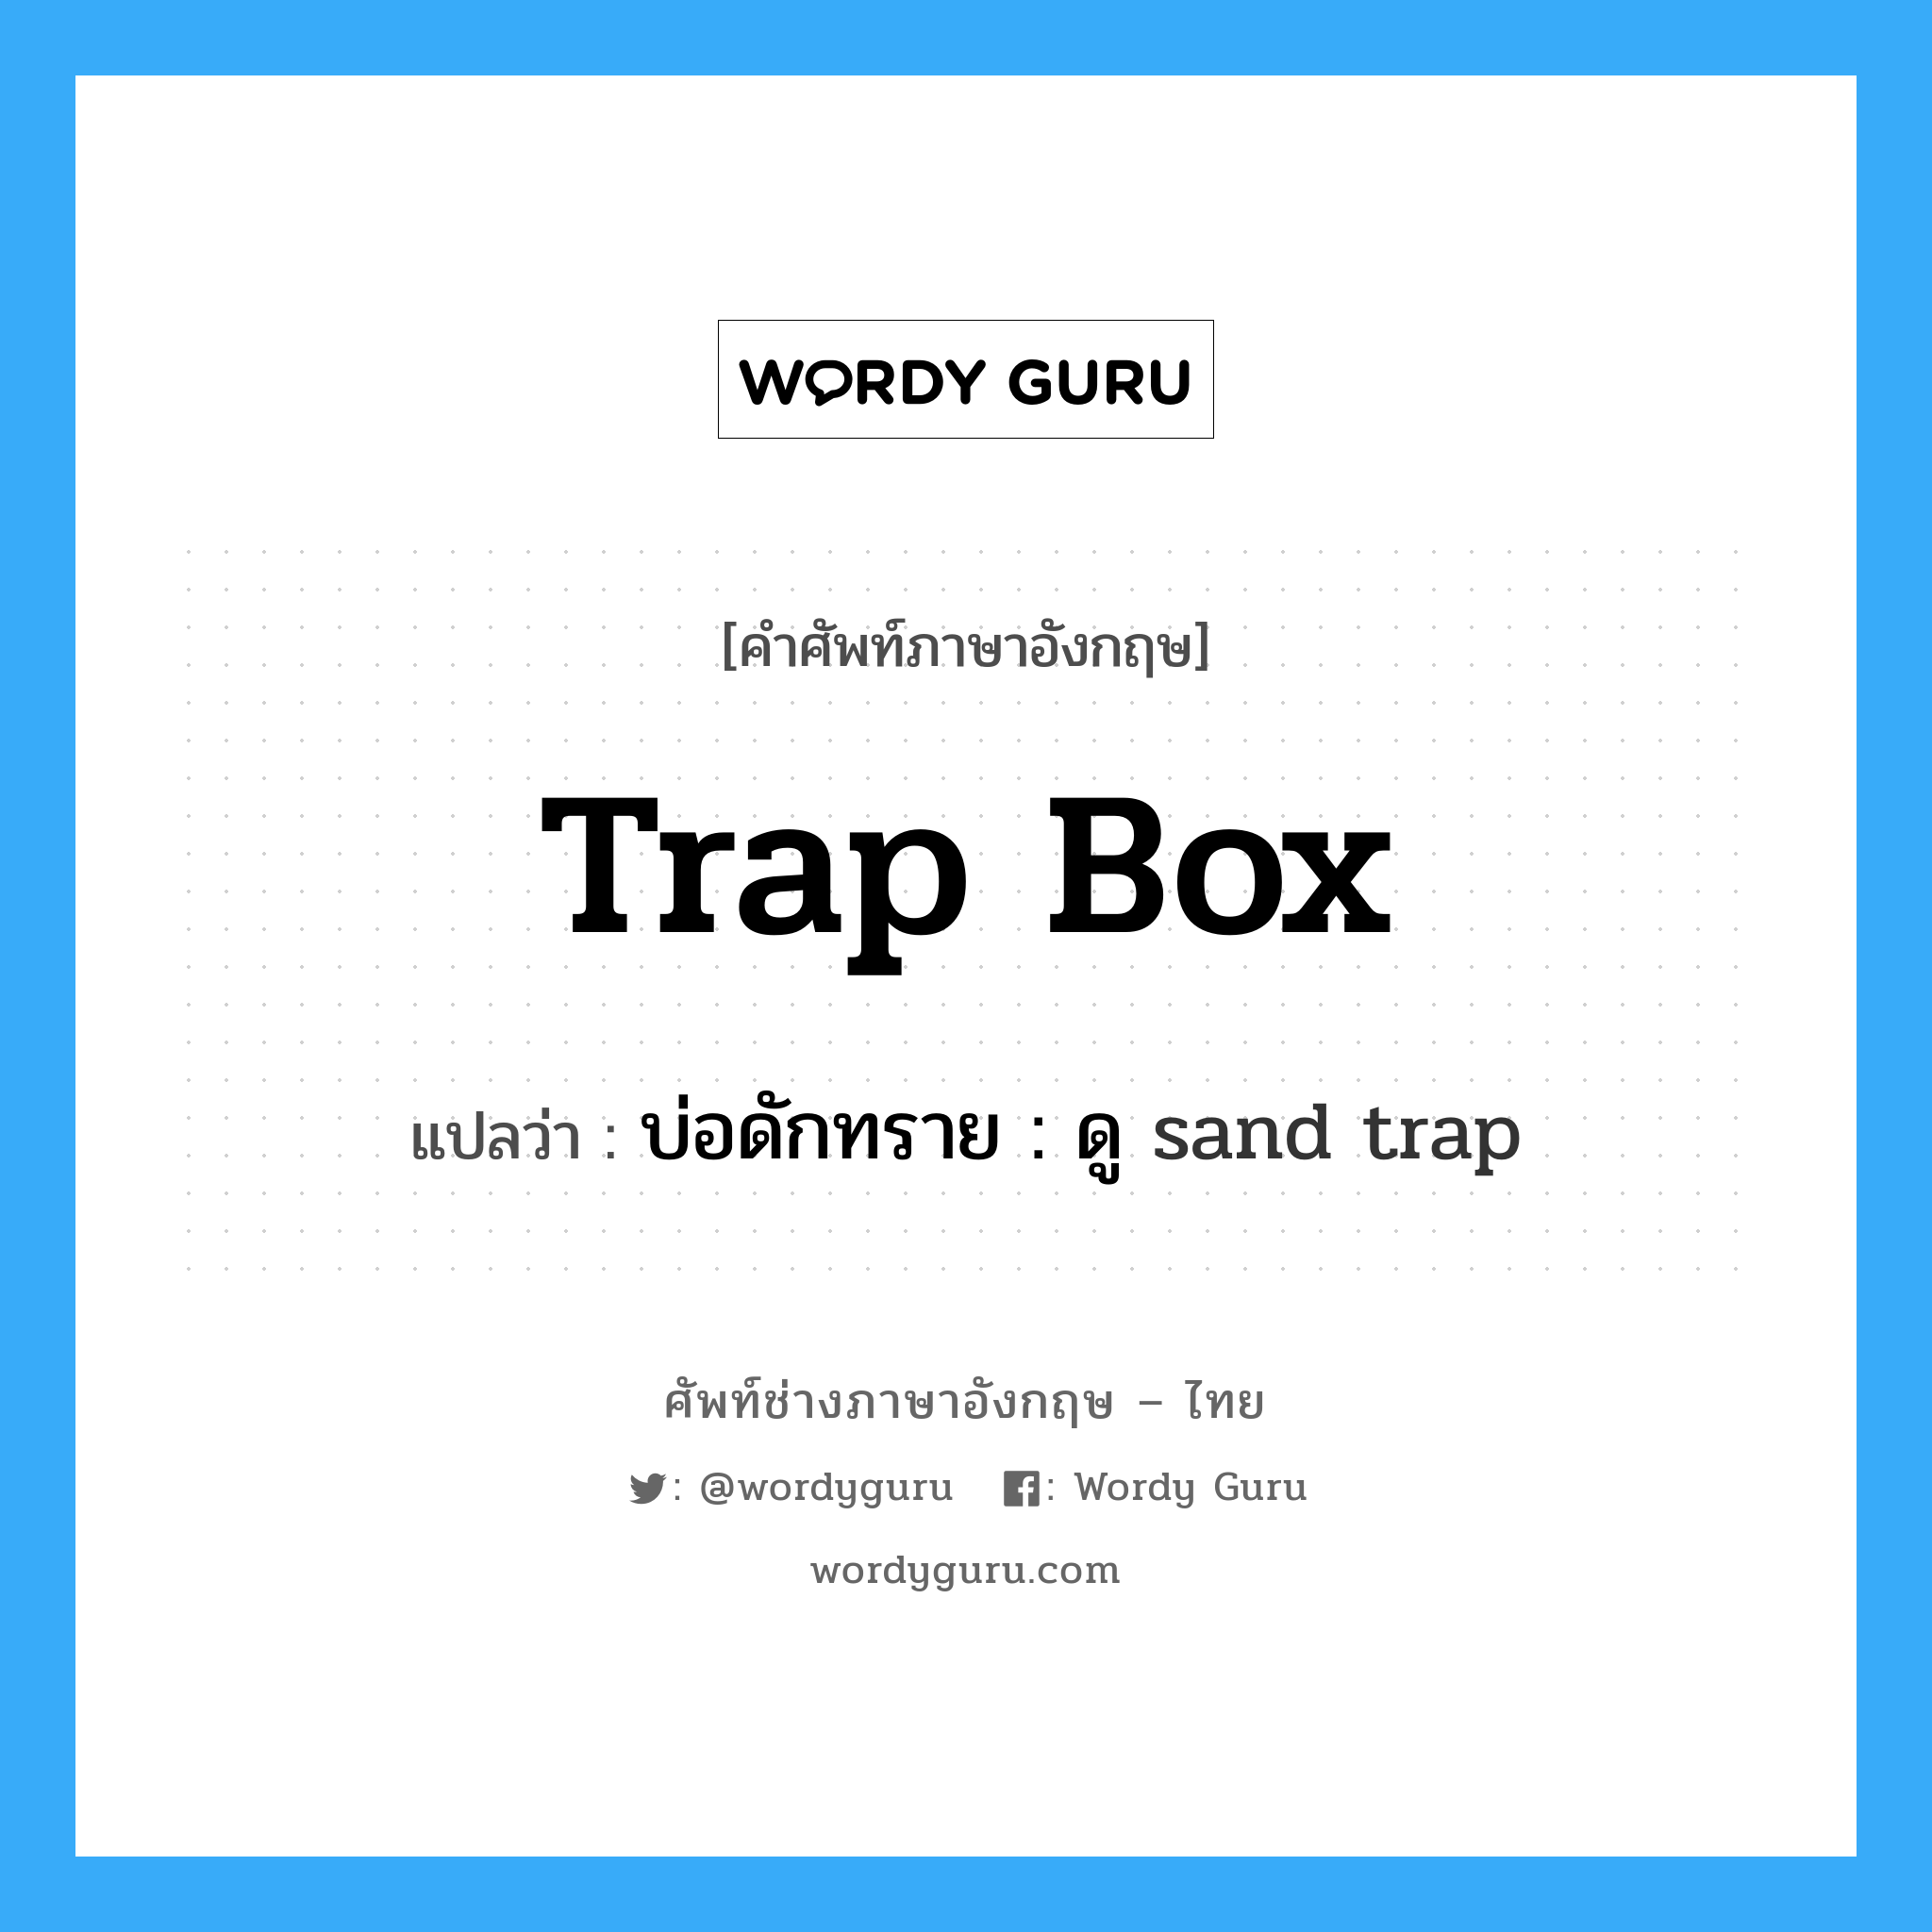 บ่อดักทราย : ดู sand trap ภาษาอังกฤษ?, คำศัพท์ช่างภาษาอังกฤษ - ไทย บ่อดักทราย : ดู sand trap คำศัพท์ภาษาอังกฤษ บ่อดักทราย : ดู sand trap แปลว่า trap box